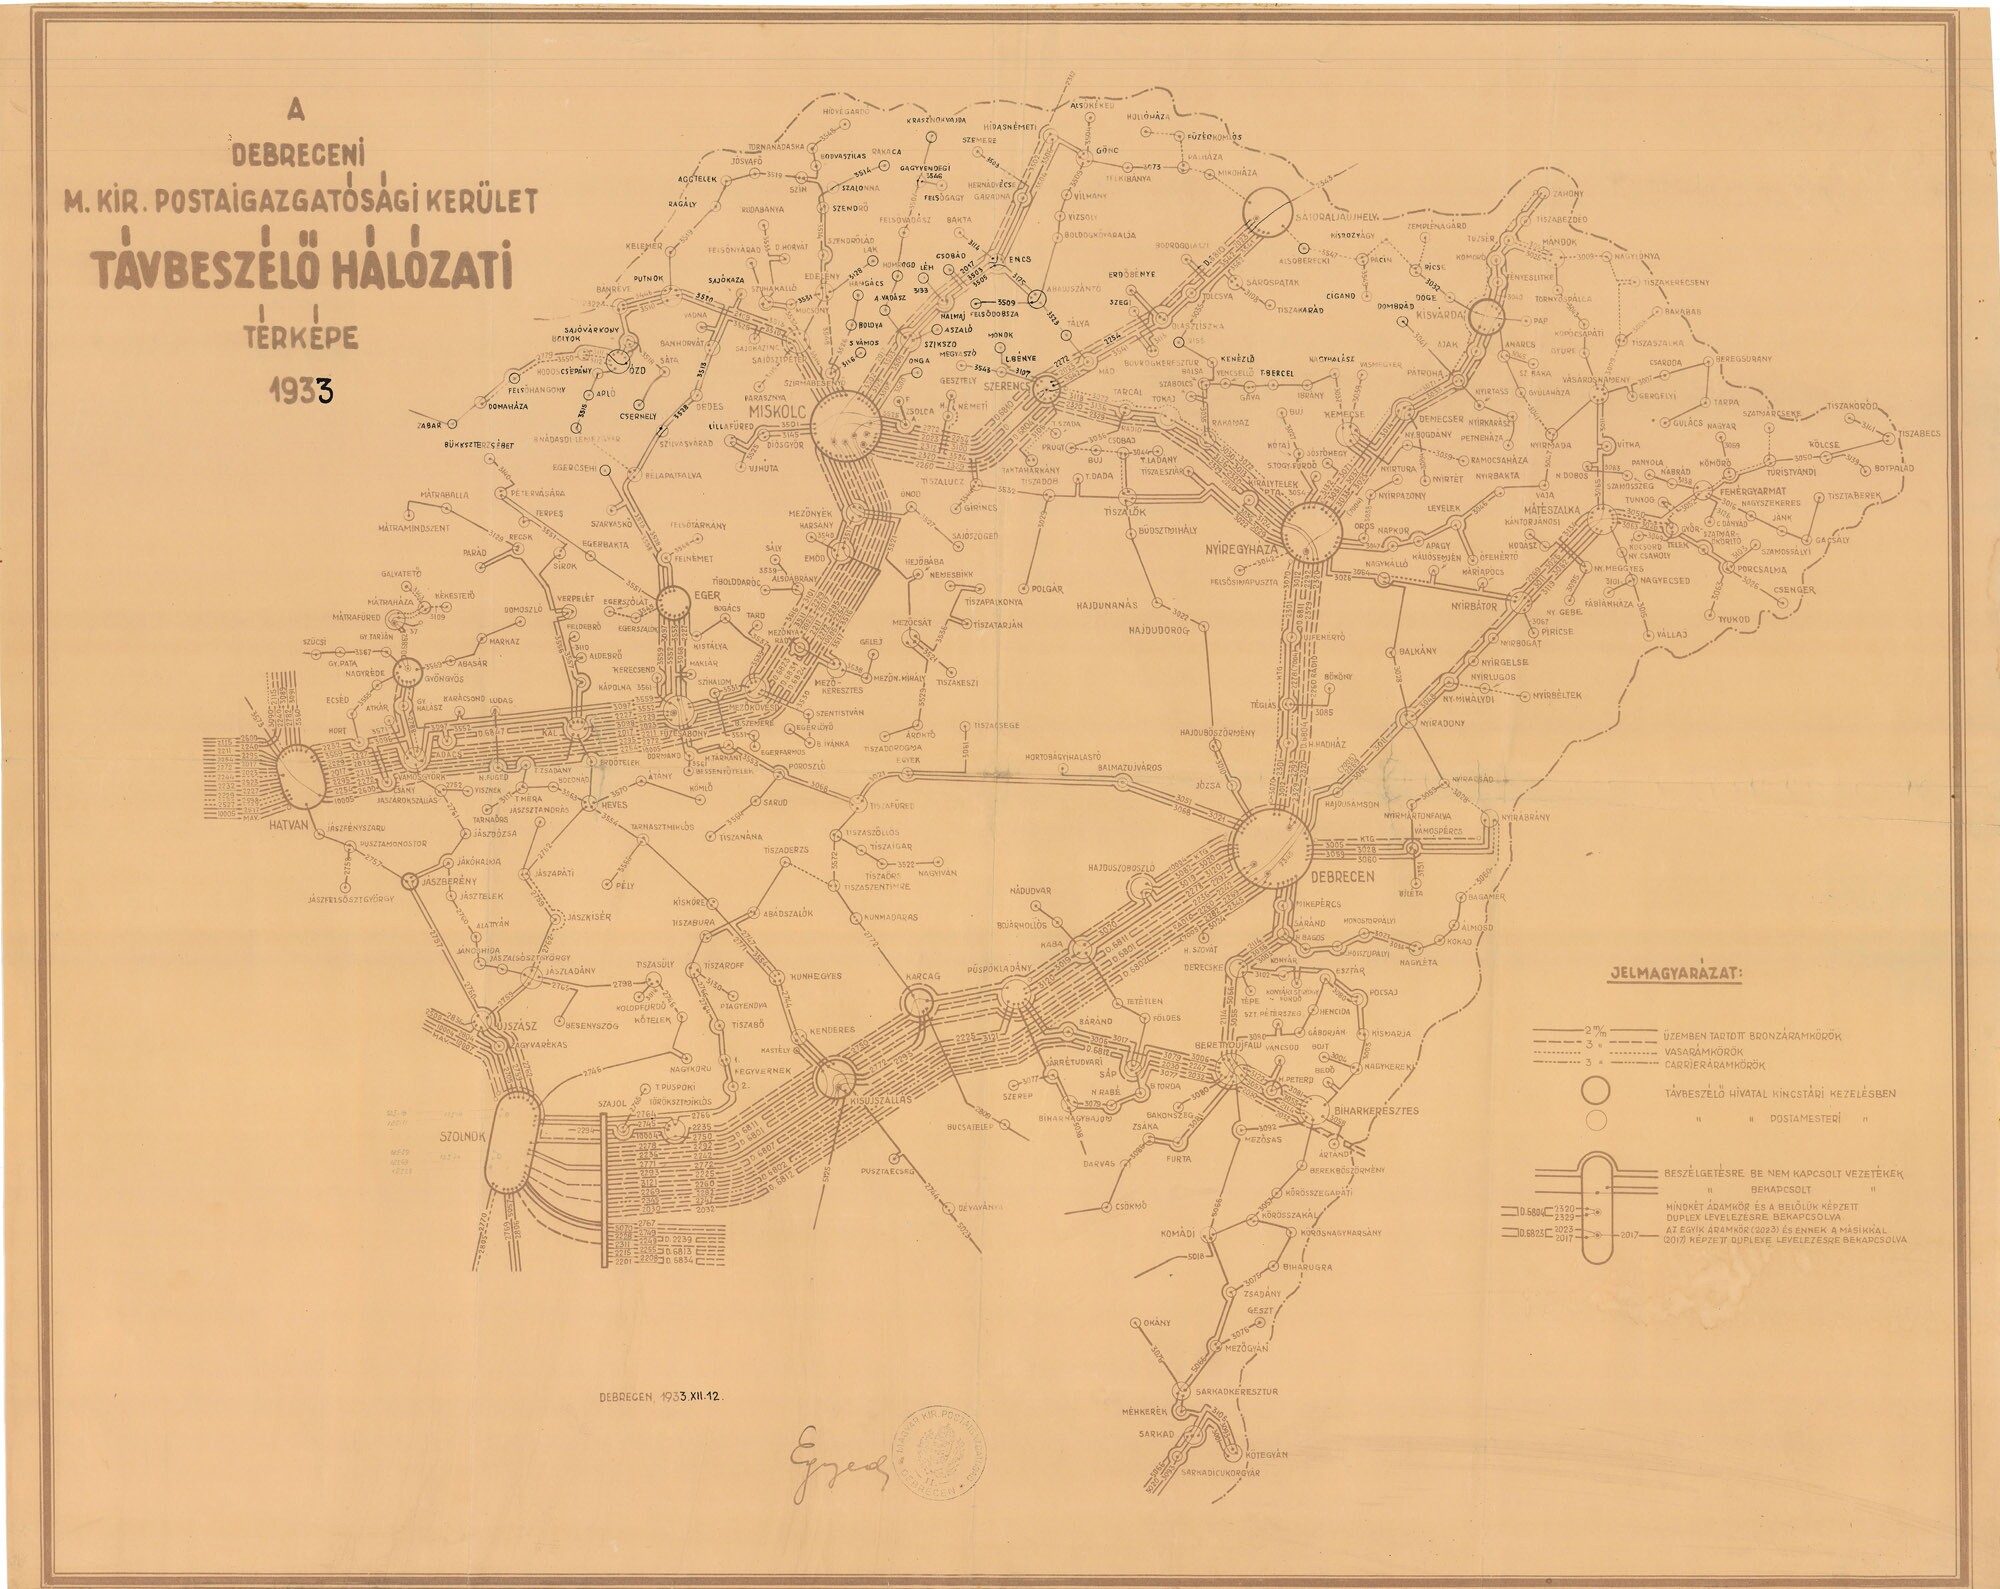 A debreceni m. kir. postaigazgatósági kerület távbeszélő-hálózati térképe, 1933 (Postamúzeum CC BY-NC-SA)